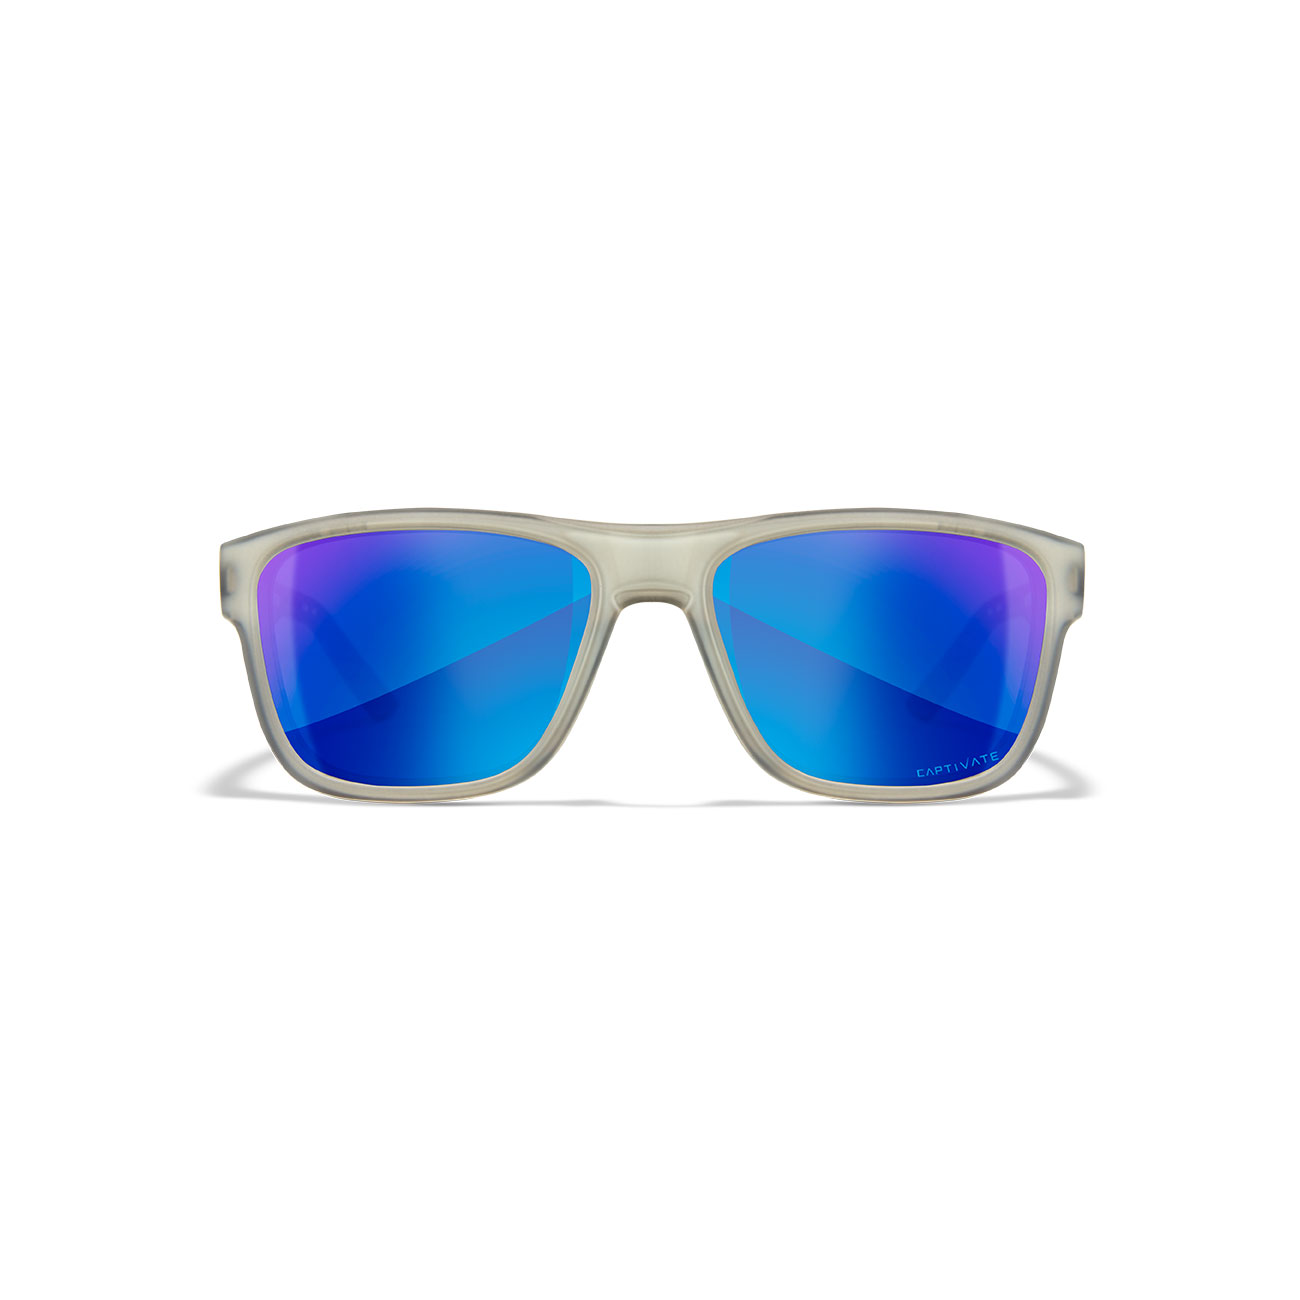 Wiley X Sonnenbrille Ovation Captivate matt transparent grau Glser blau verspiegelt polarisiert inkl. Brillenetui und Seitensch Bild 1